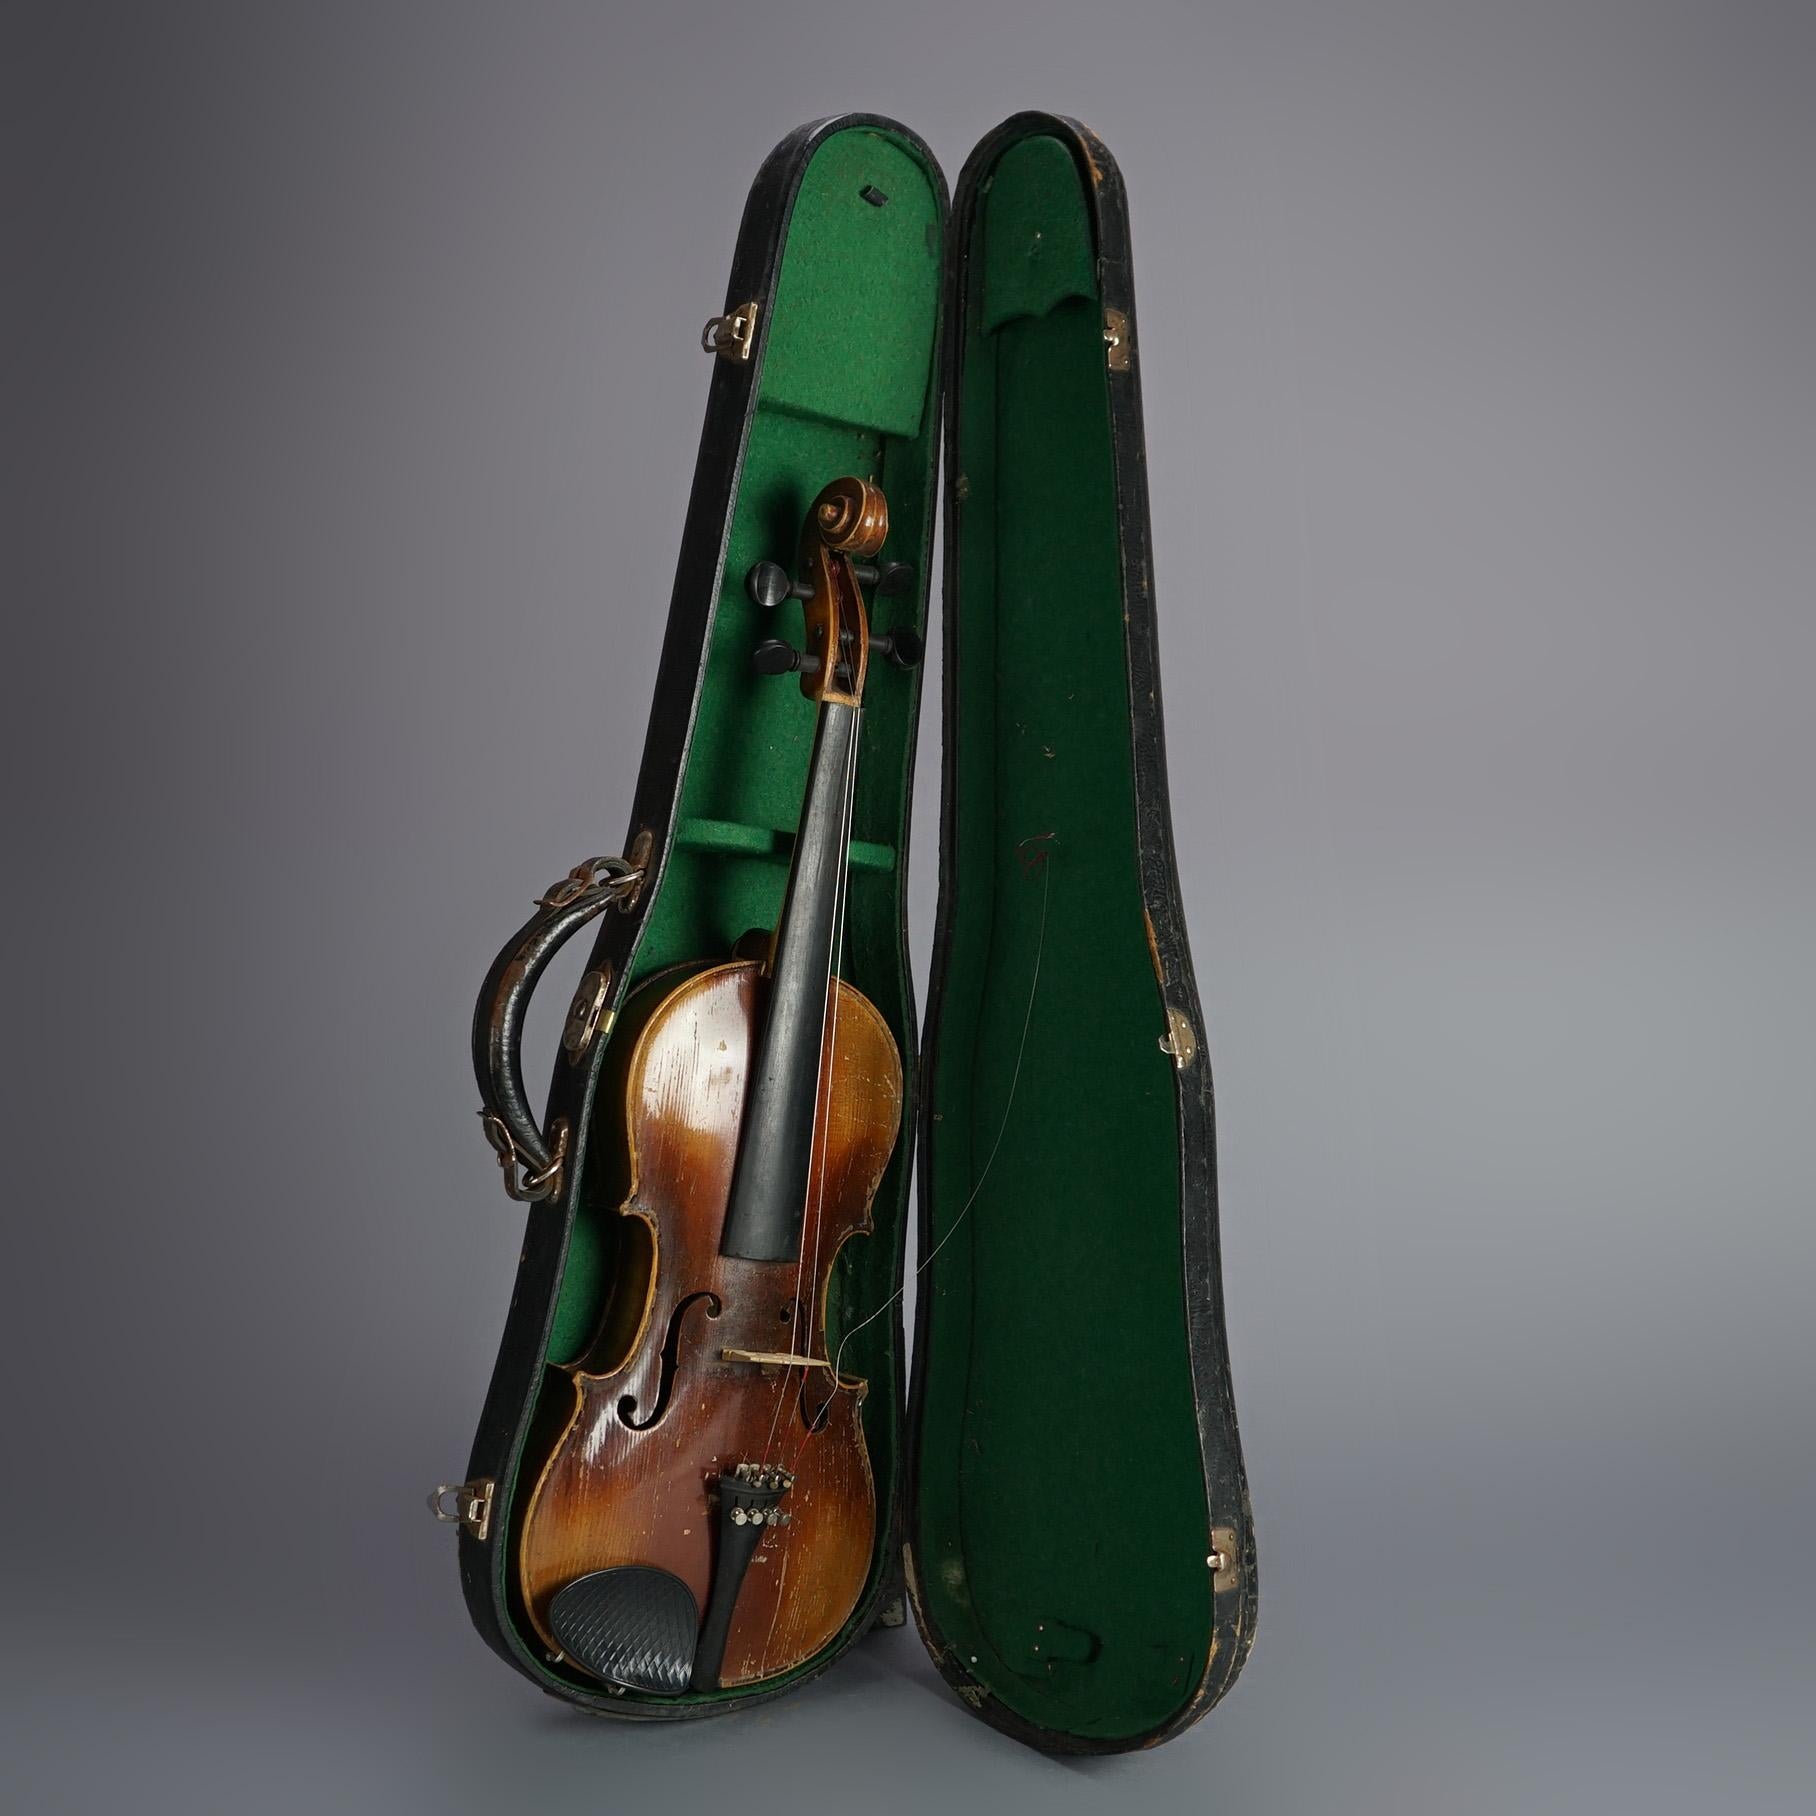 Antike Jacob-trainer- Violine, Schleife und Etui, 19. Jahrhundert

Maße: 31''H x 11''B x 4,5''D